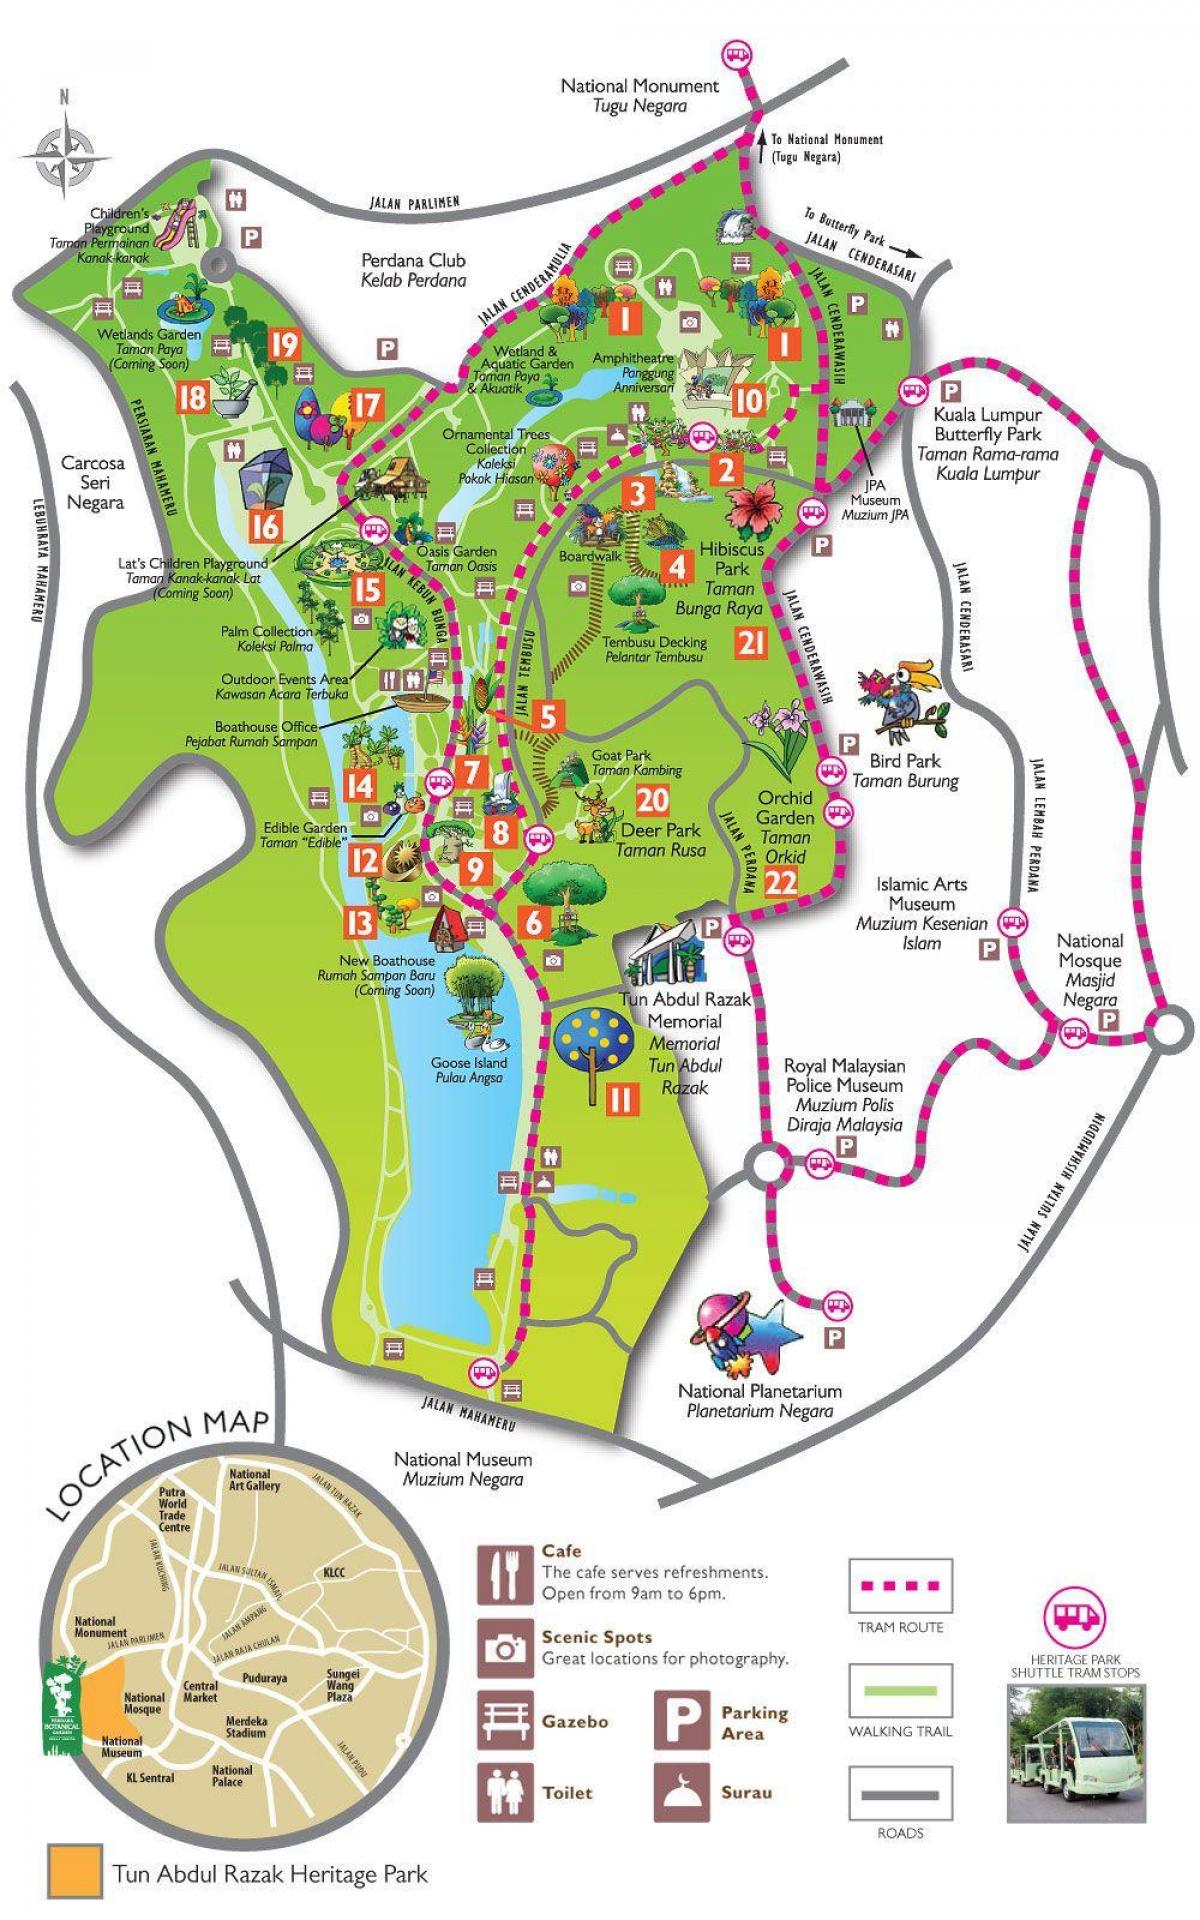 Mapa de la perdana jardí botànic